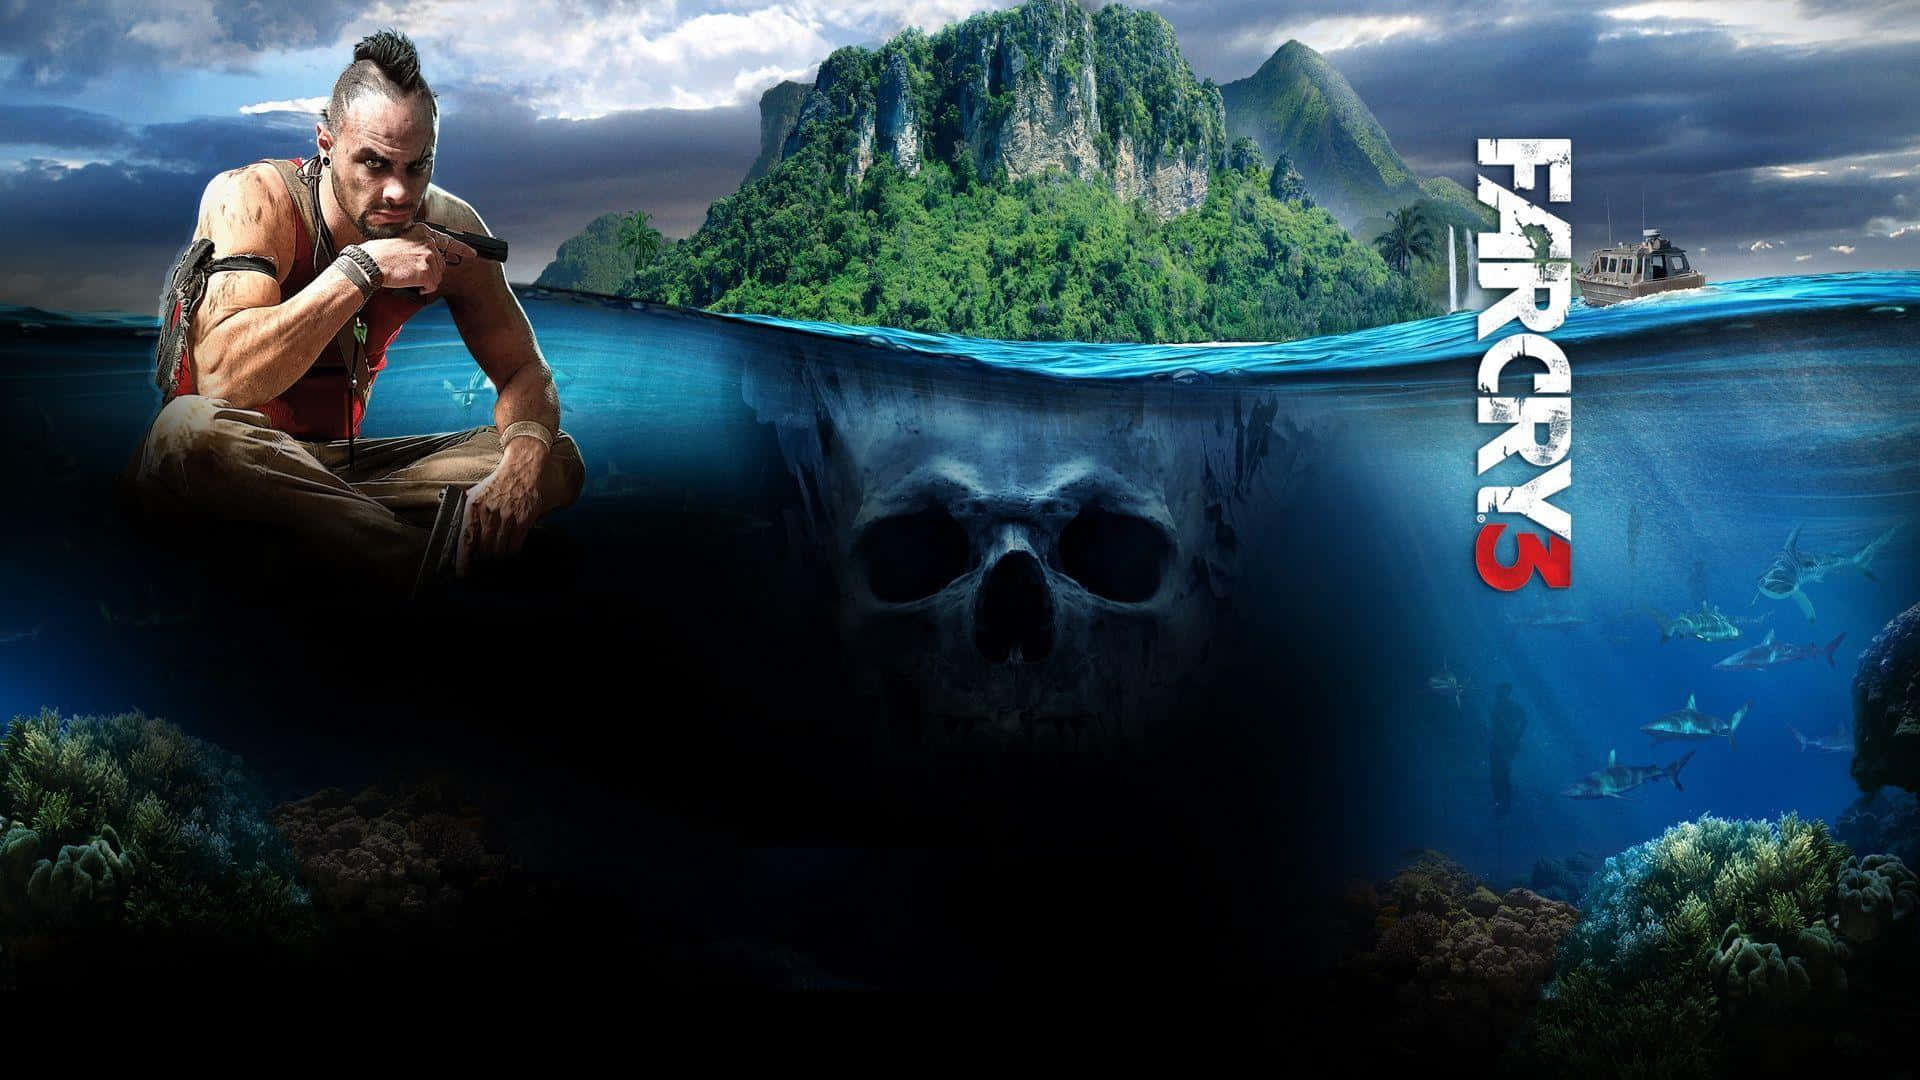 Uforglemmelig oplevelse - Mød Vaas, den ikoniske skurk I Far Cry 3 Wallpaper